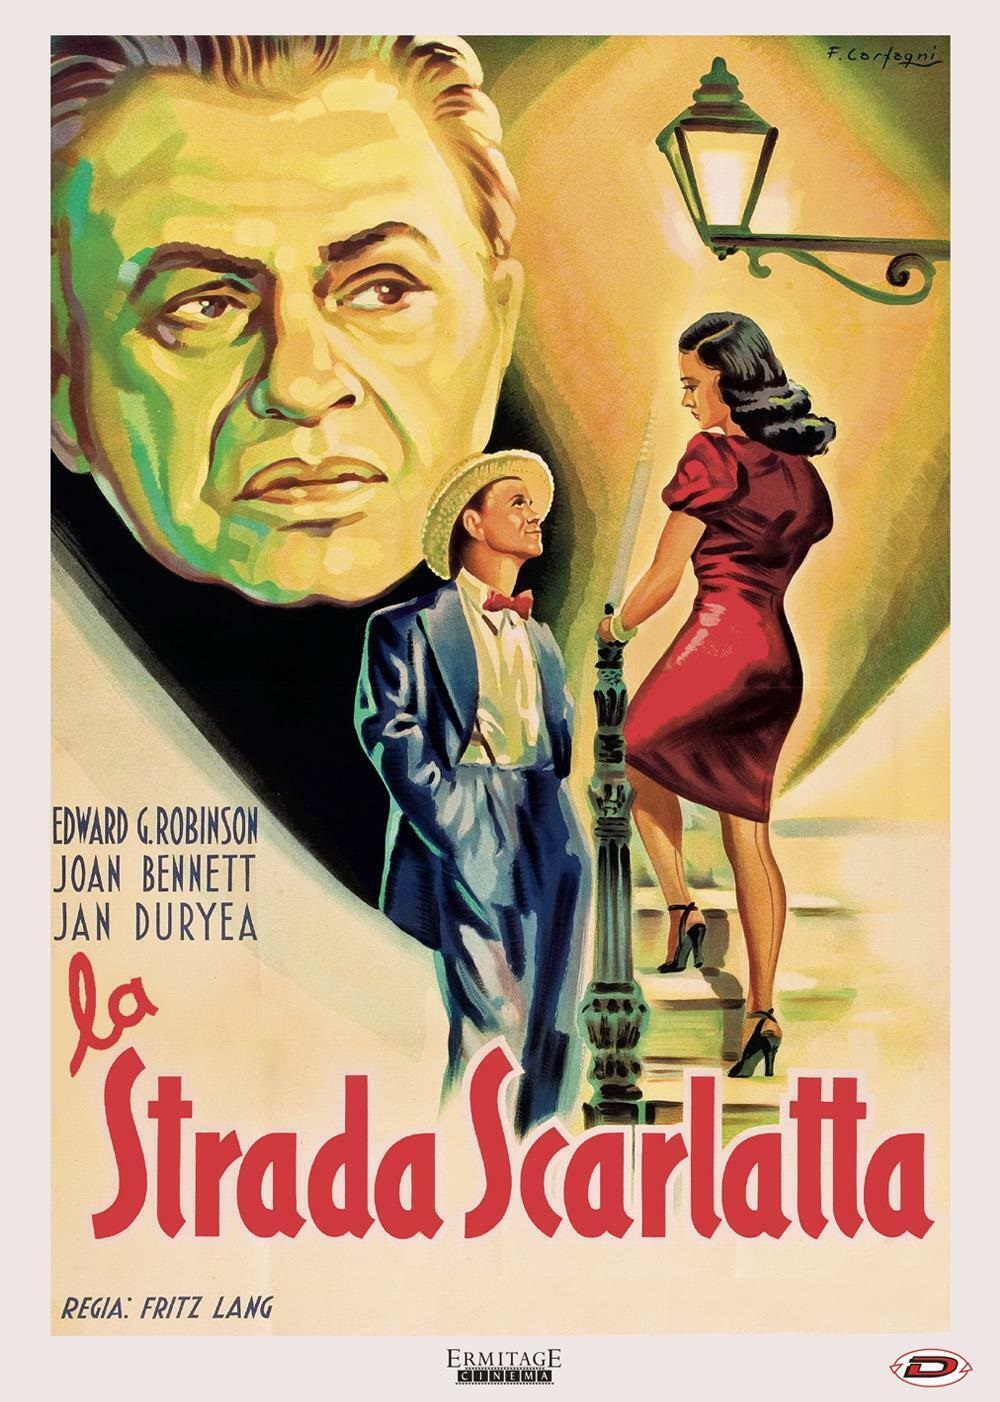 La strada scarlatta [B/N] [HD] (1945)